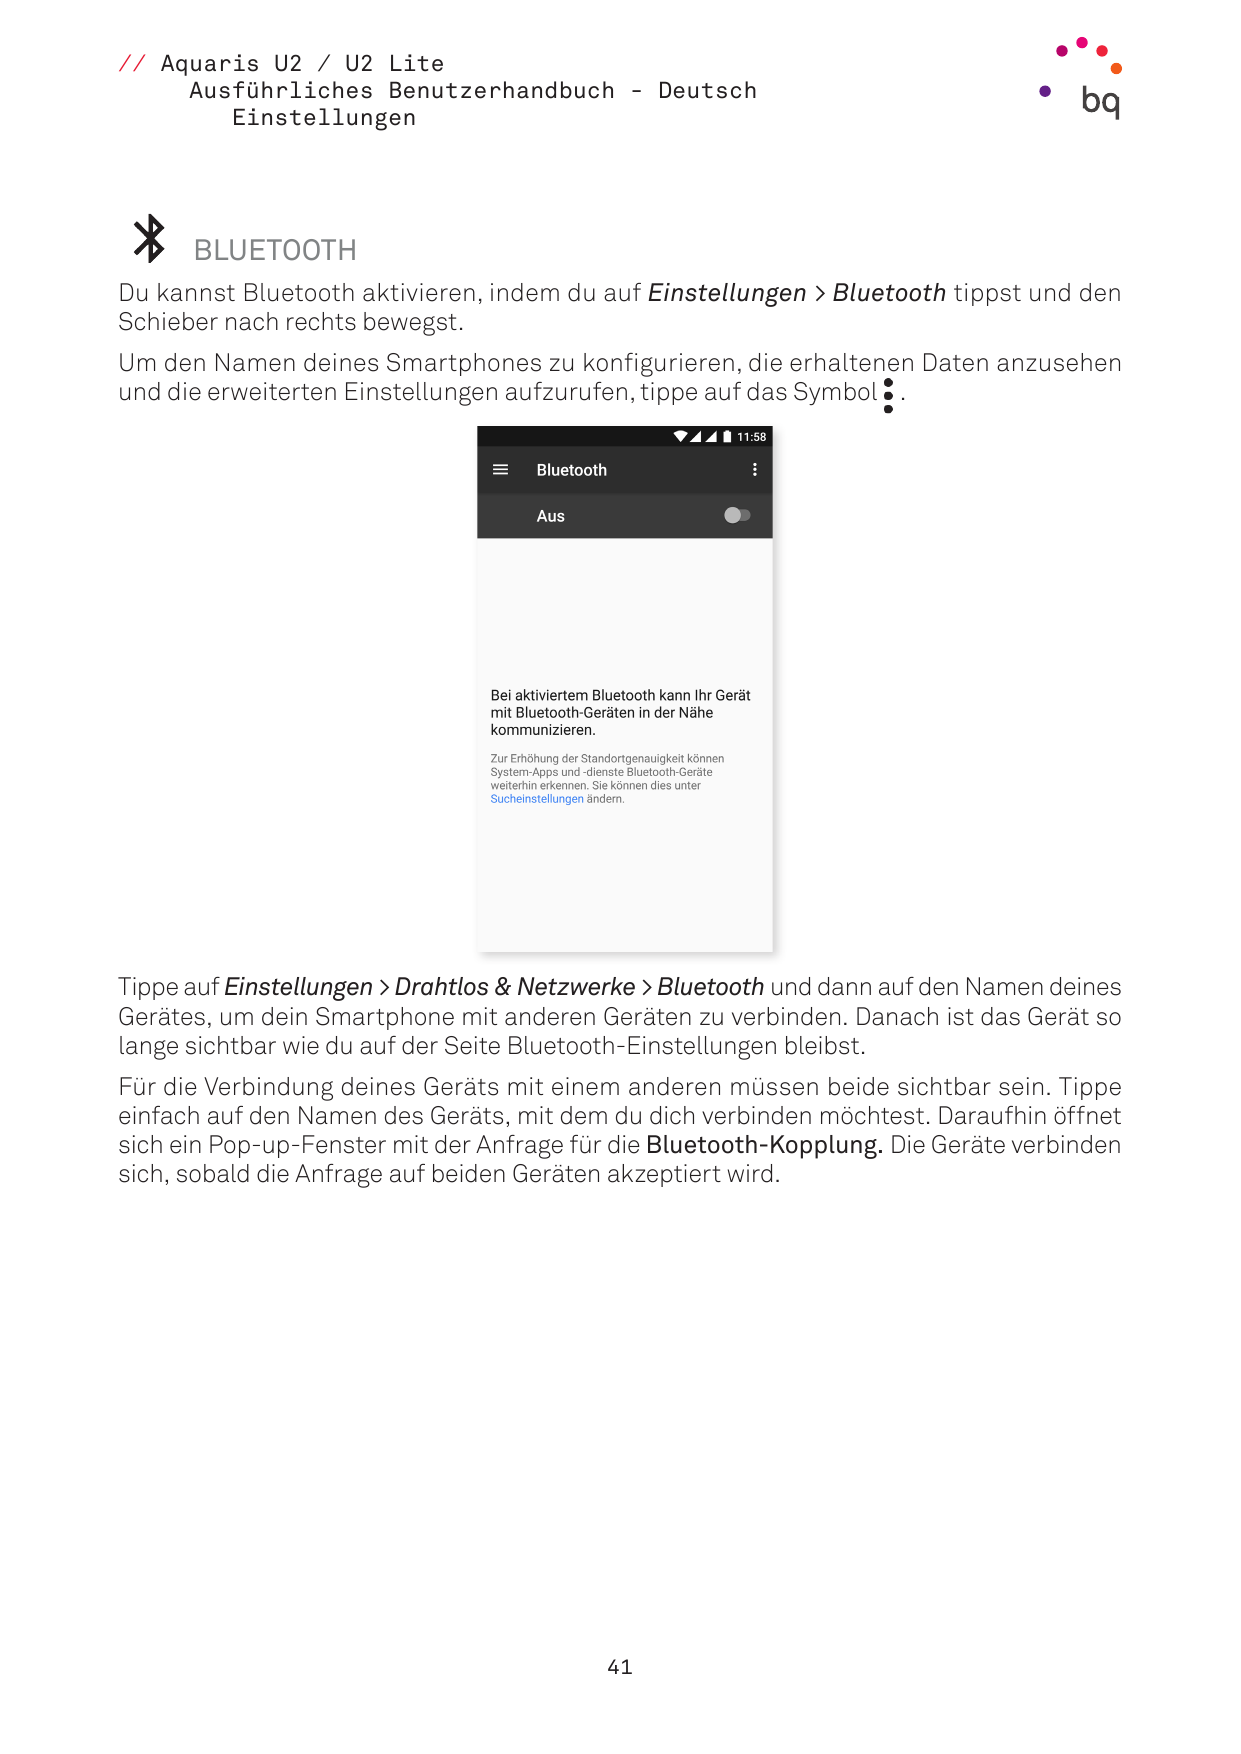 // Aquaris U2 / U2 LiteAusführliches Benutzerhandbuch - DeutschEinstellungenBLUETOOTHDu kannst Bluetooth aktivieren, indem du au